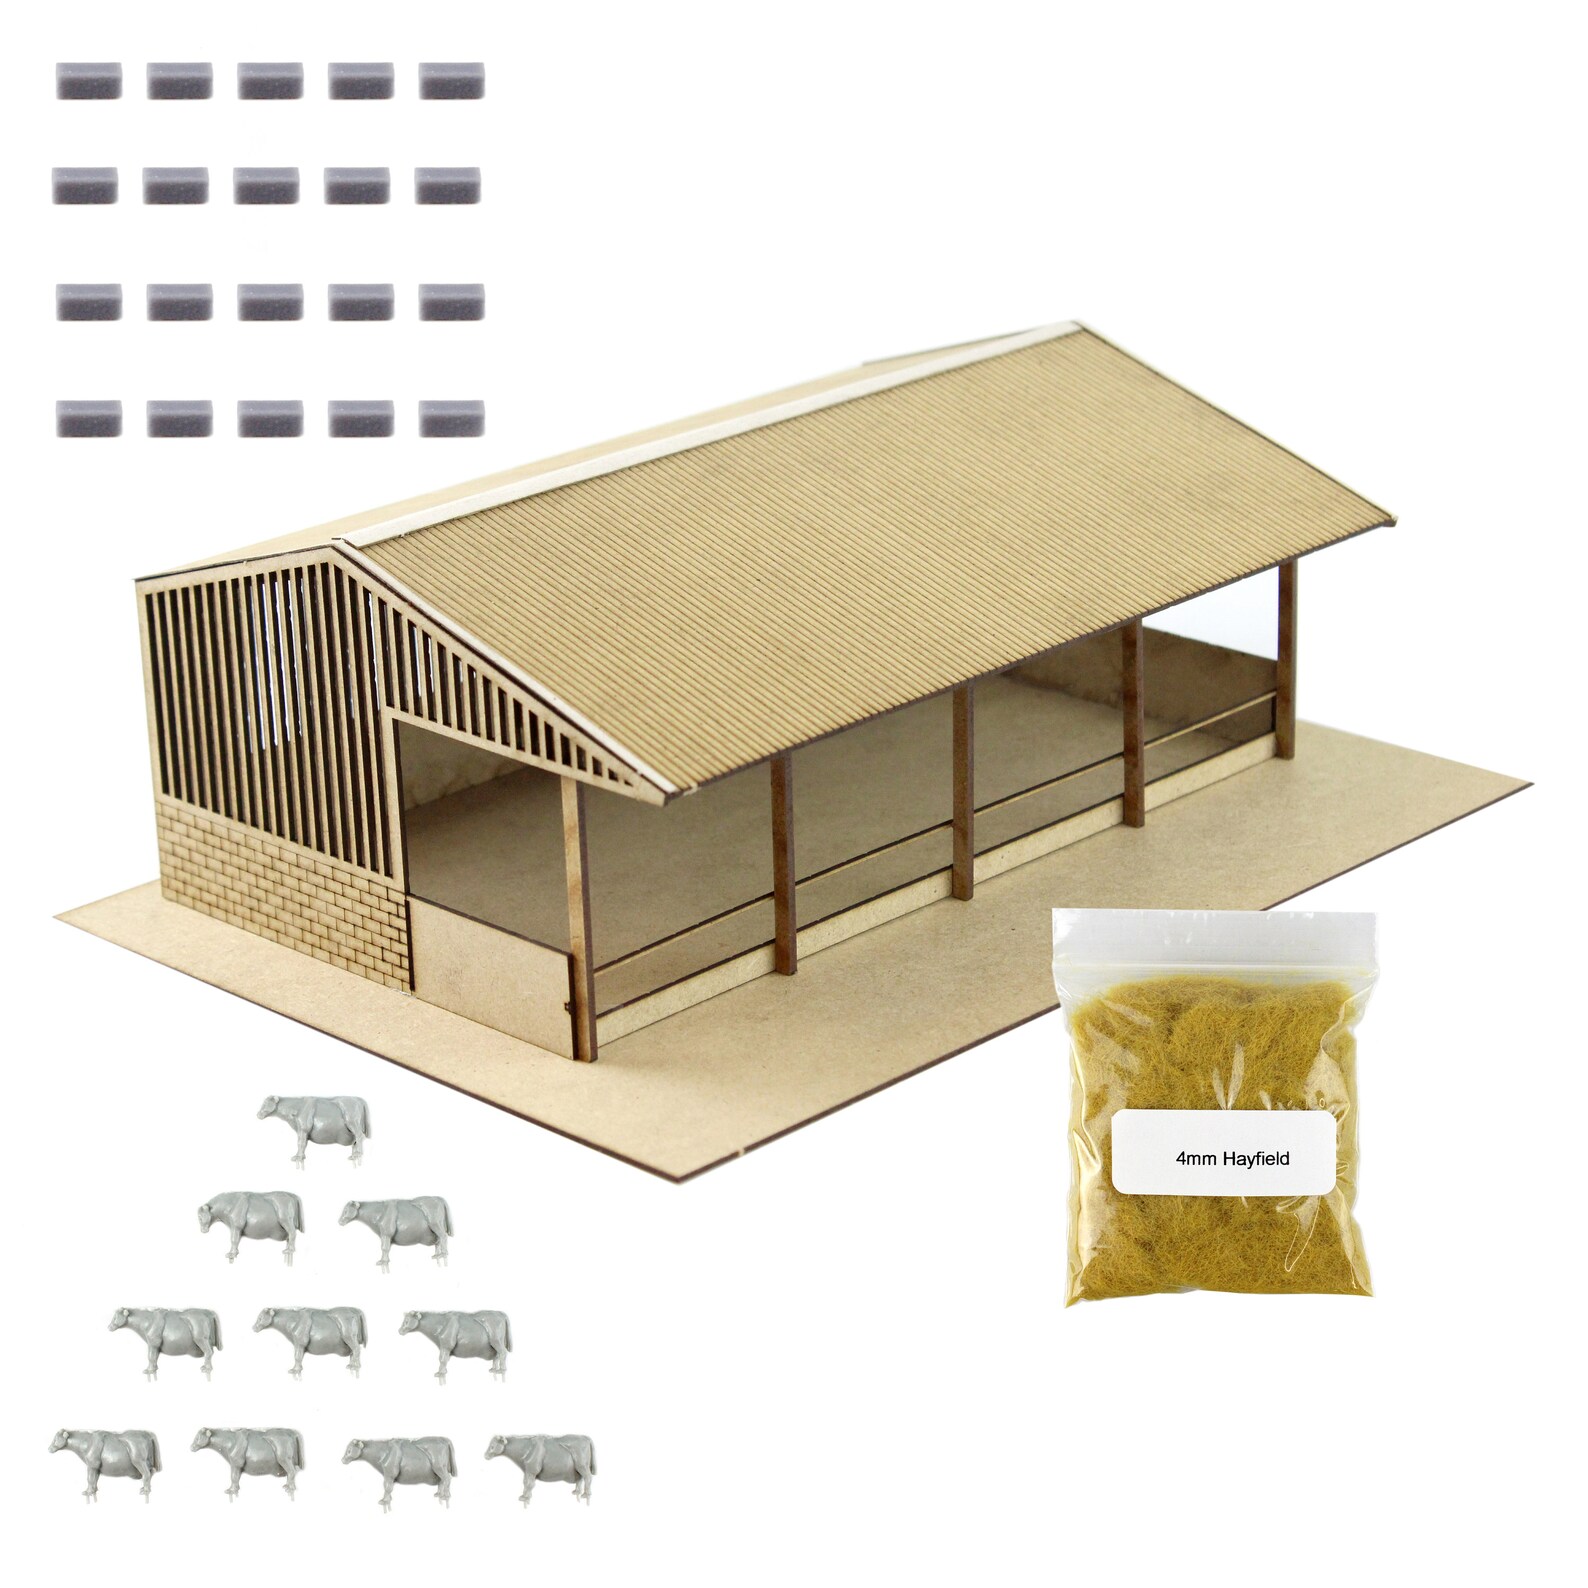 FALLER H0 180309 Doghouse Kit for sale online